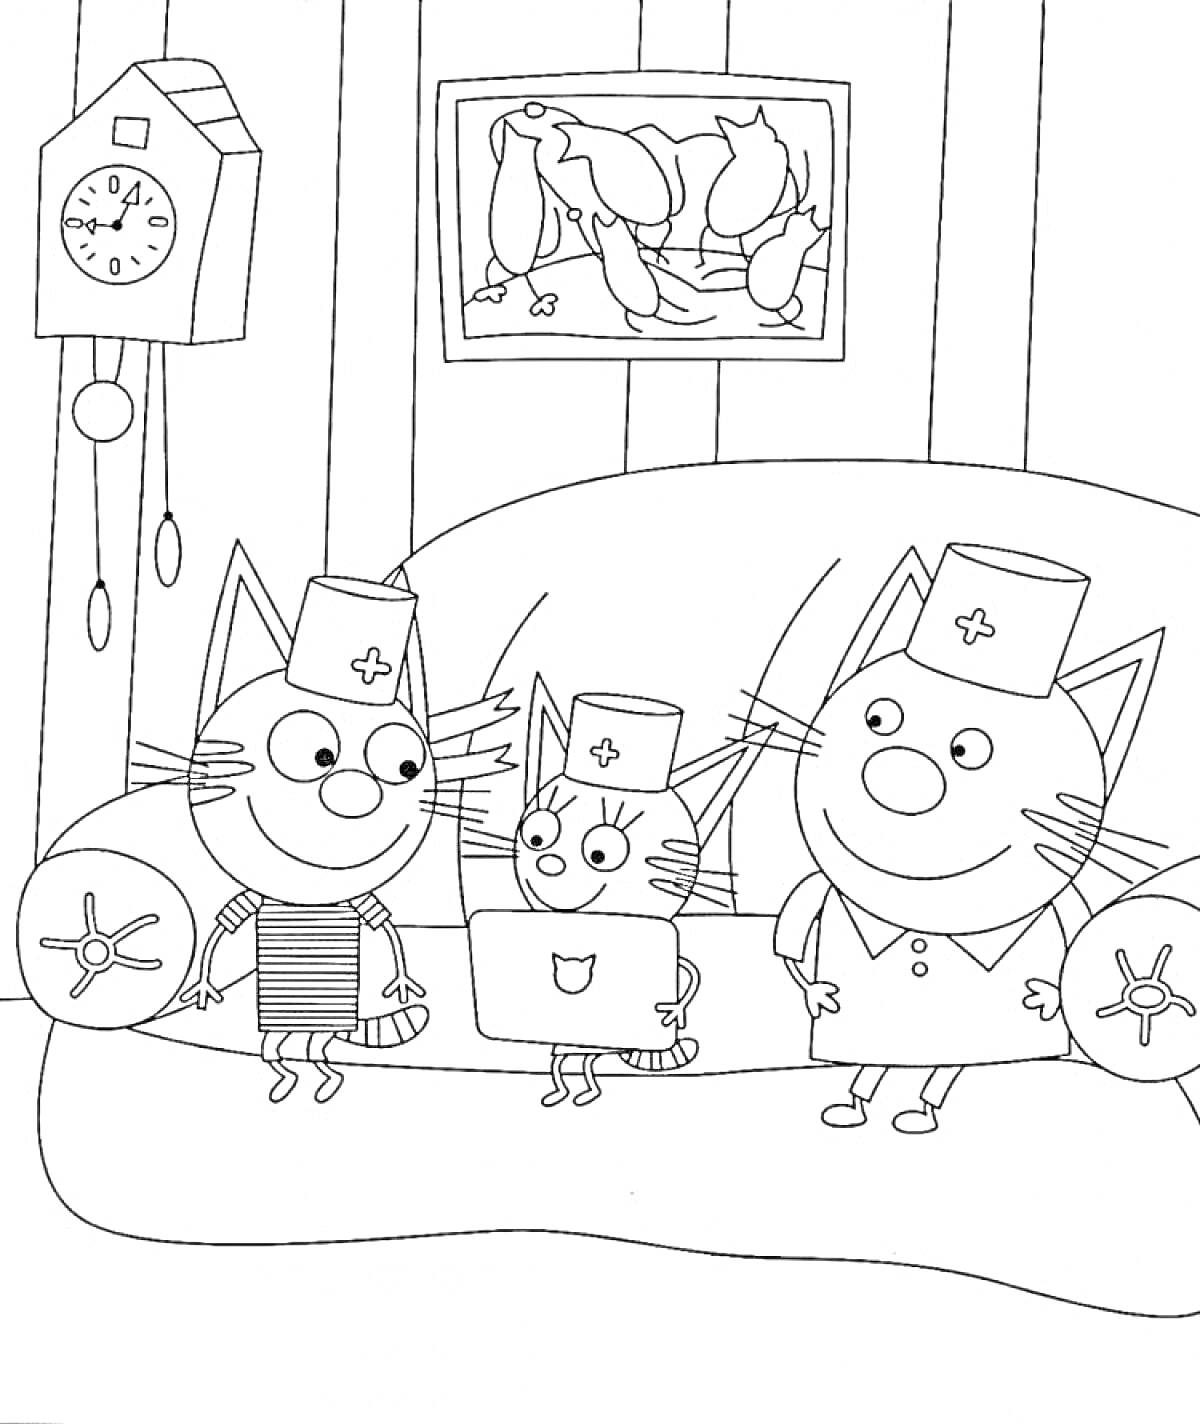 Раскраска Три кота на диване в шапках, с ноутбуком, часы на стене, картина